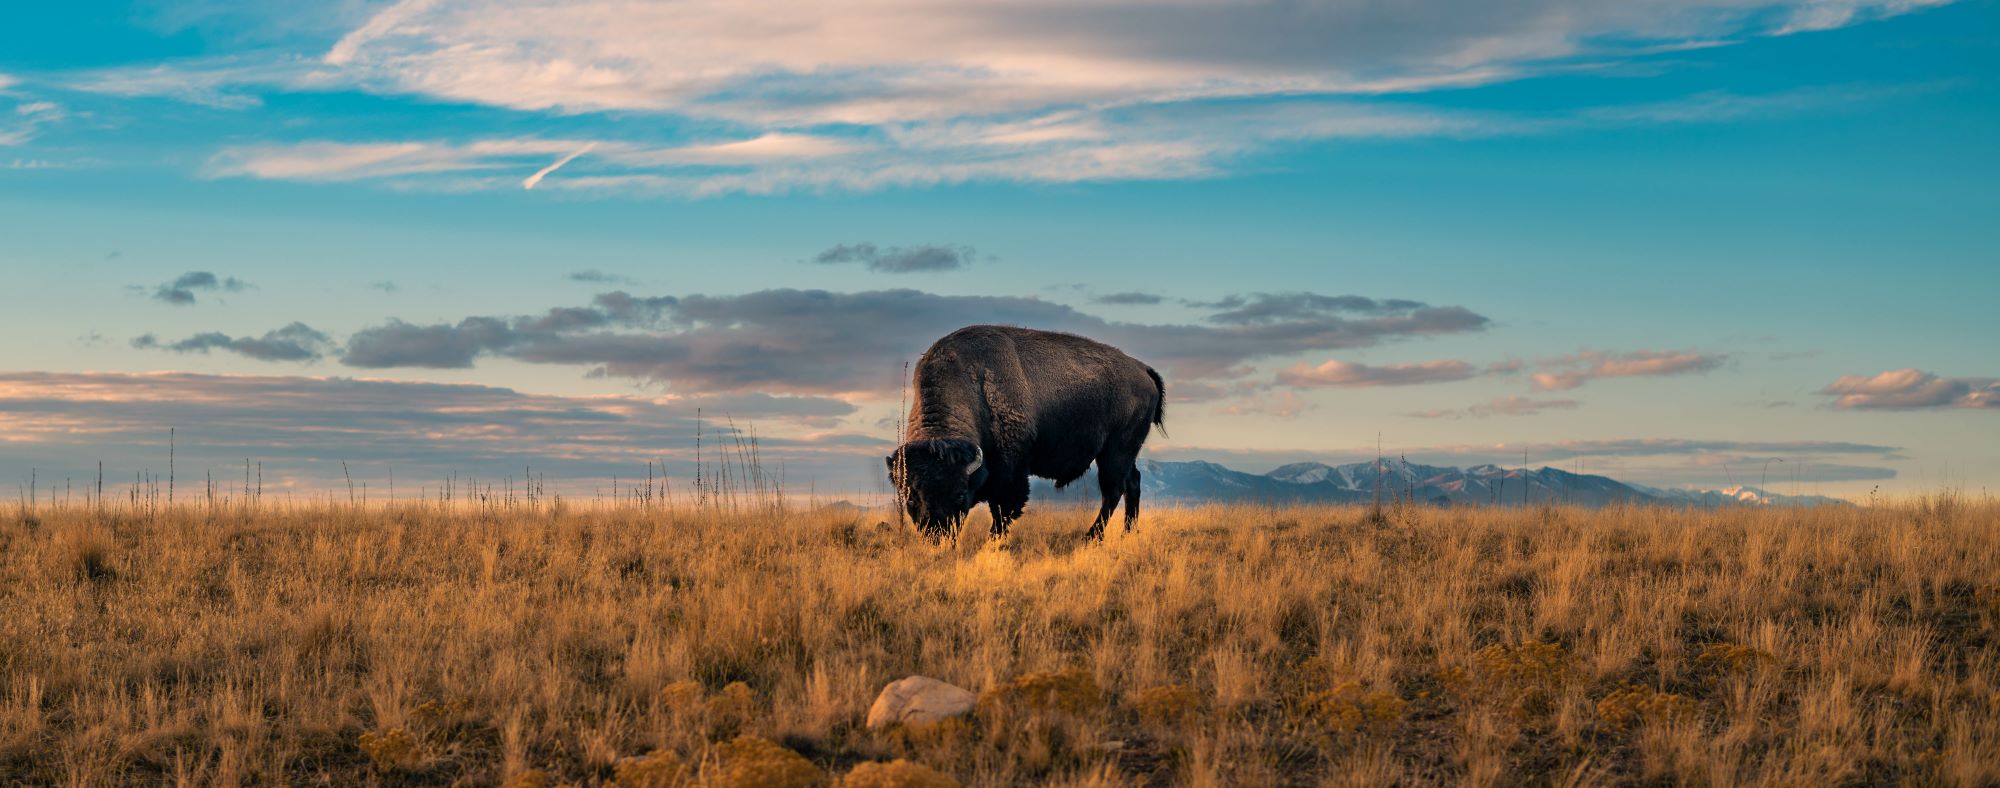 An American bison in Utah.